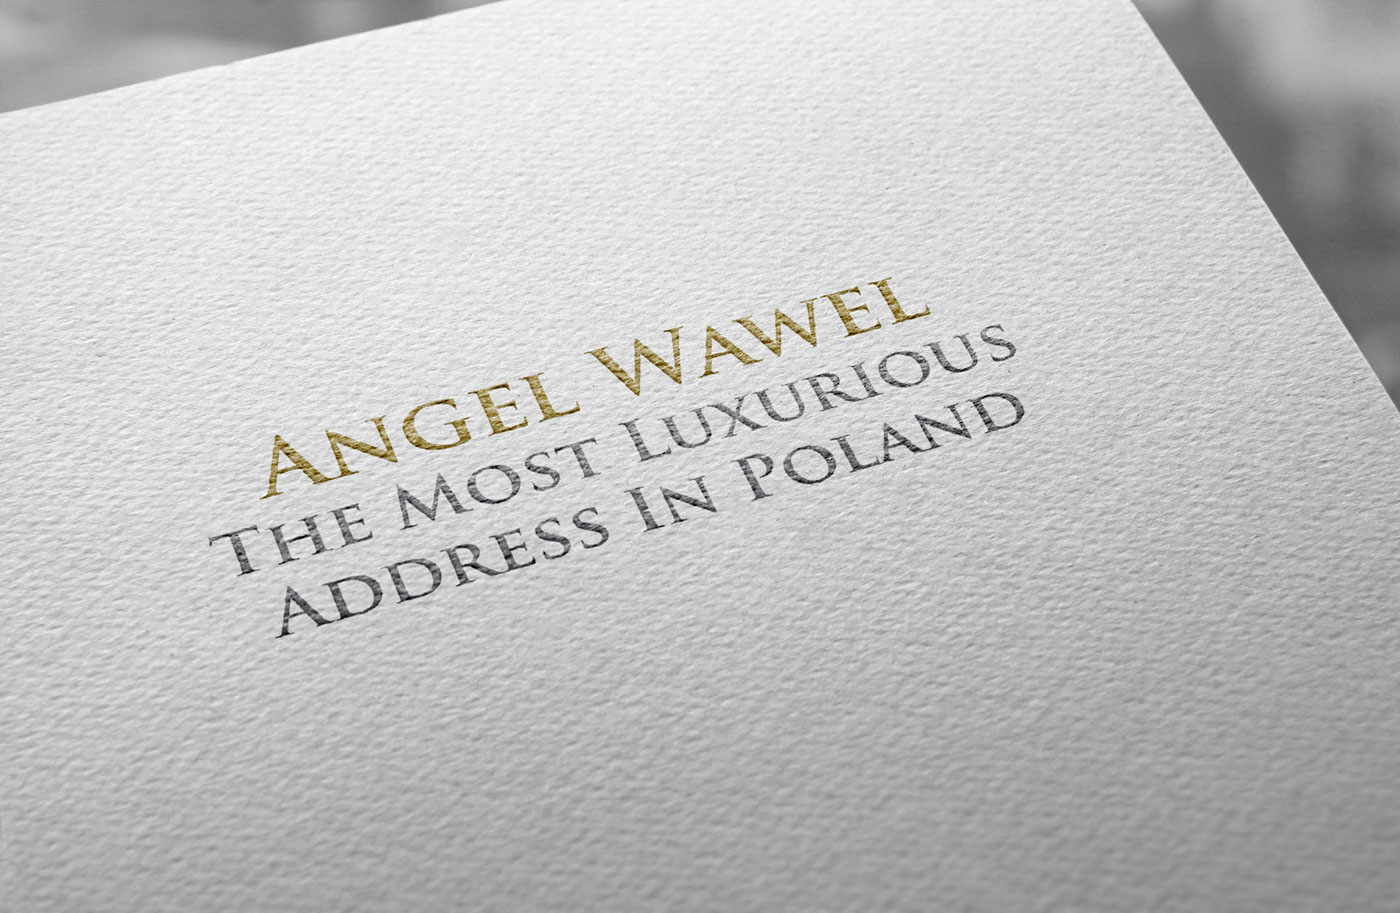 Angel Wawel